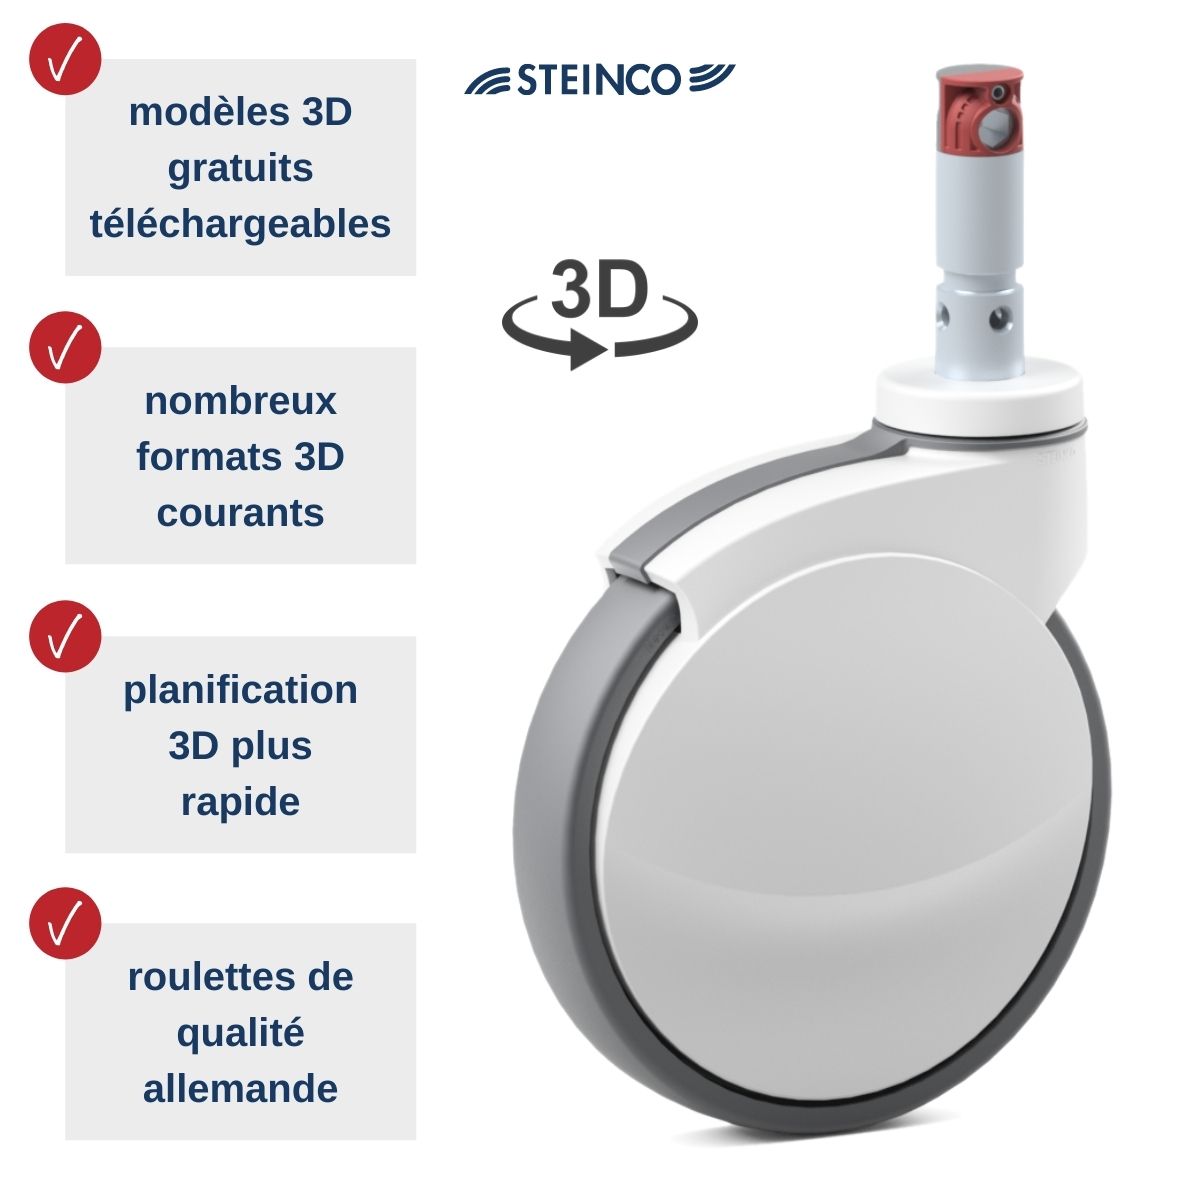 Roulettes médicales Steinco — Modèles 3D gratuits pour planificateurs, constructeurs, ingénieurs de projet et développeurs produits